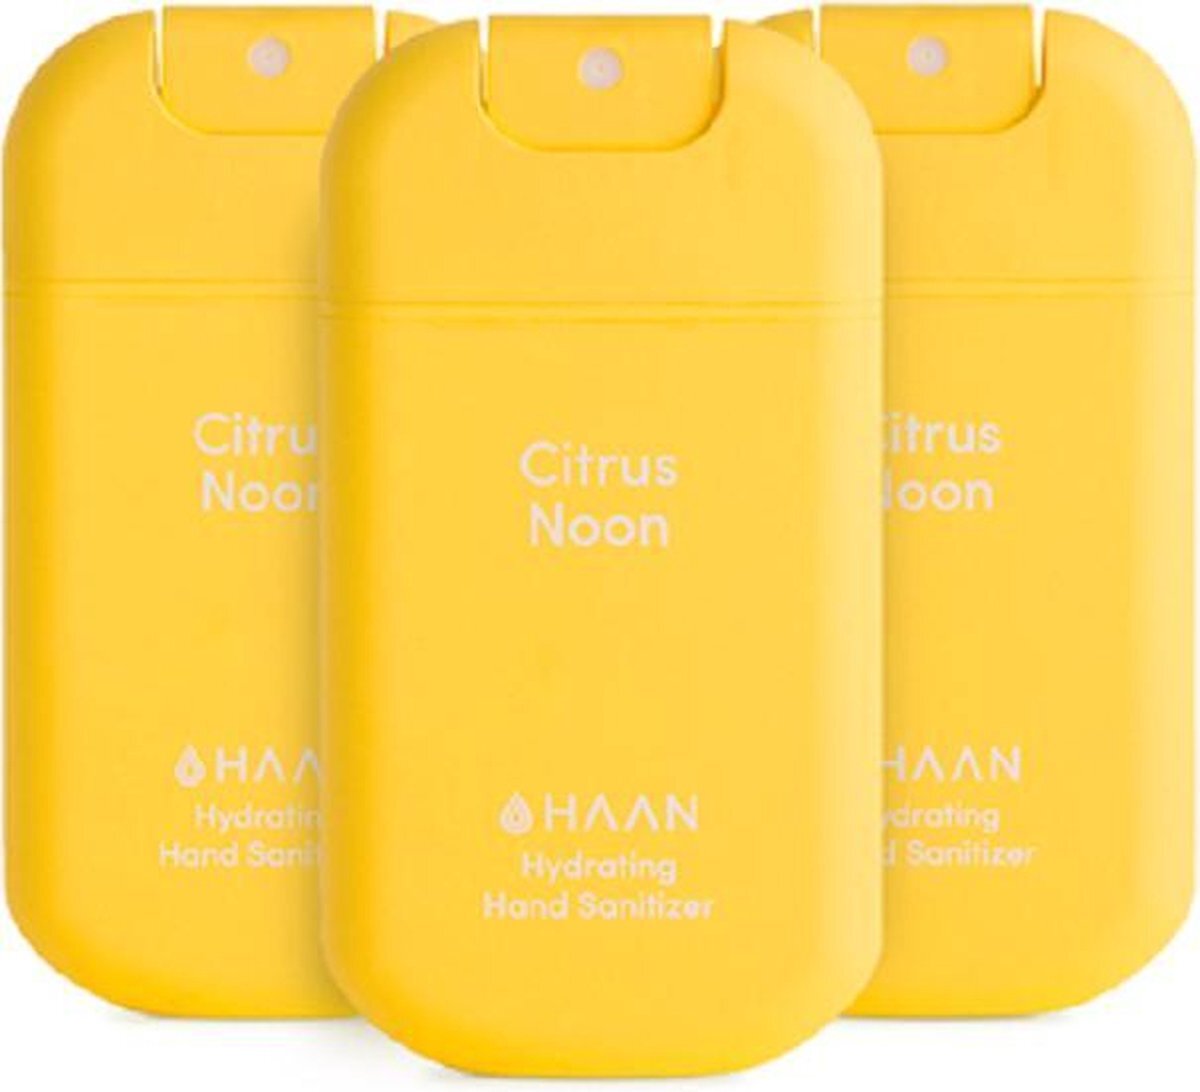 Haan - Handzeep - Desinfecterend - 3-Pack Citrus Noon Spray 30ml - Navulbaar